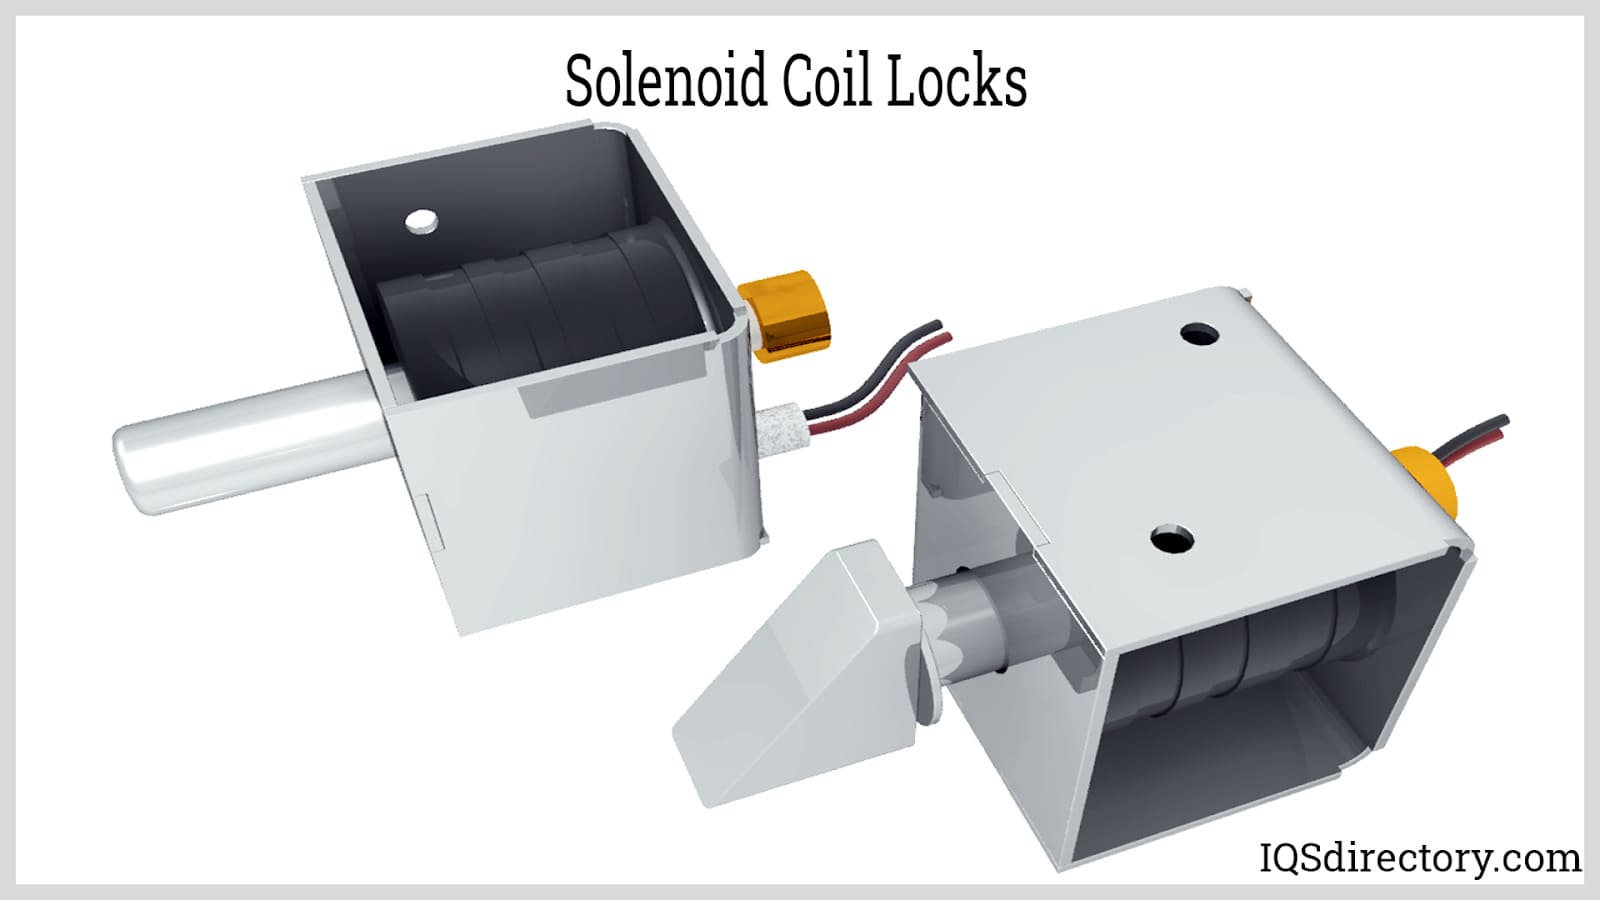 Solenoid Coil Locks